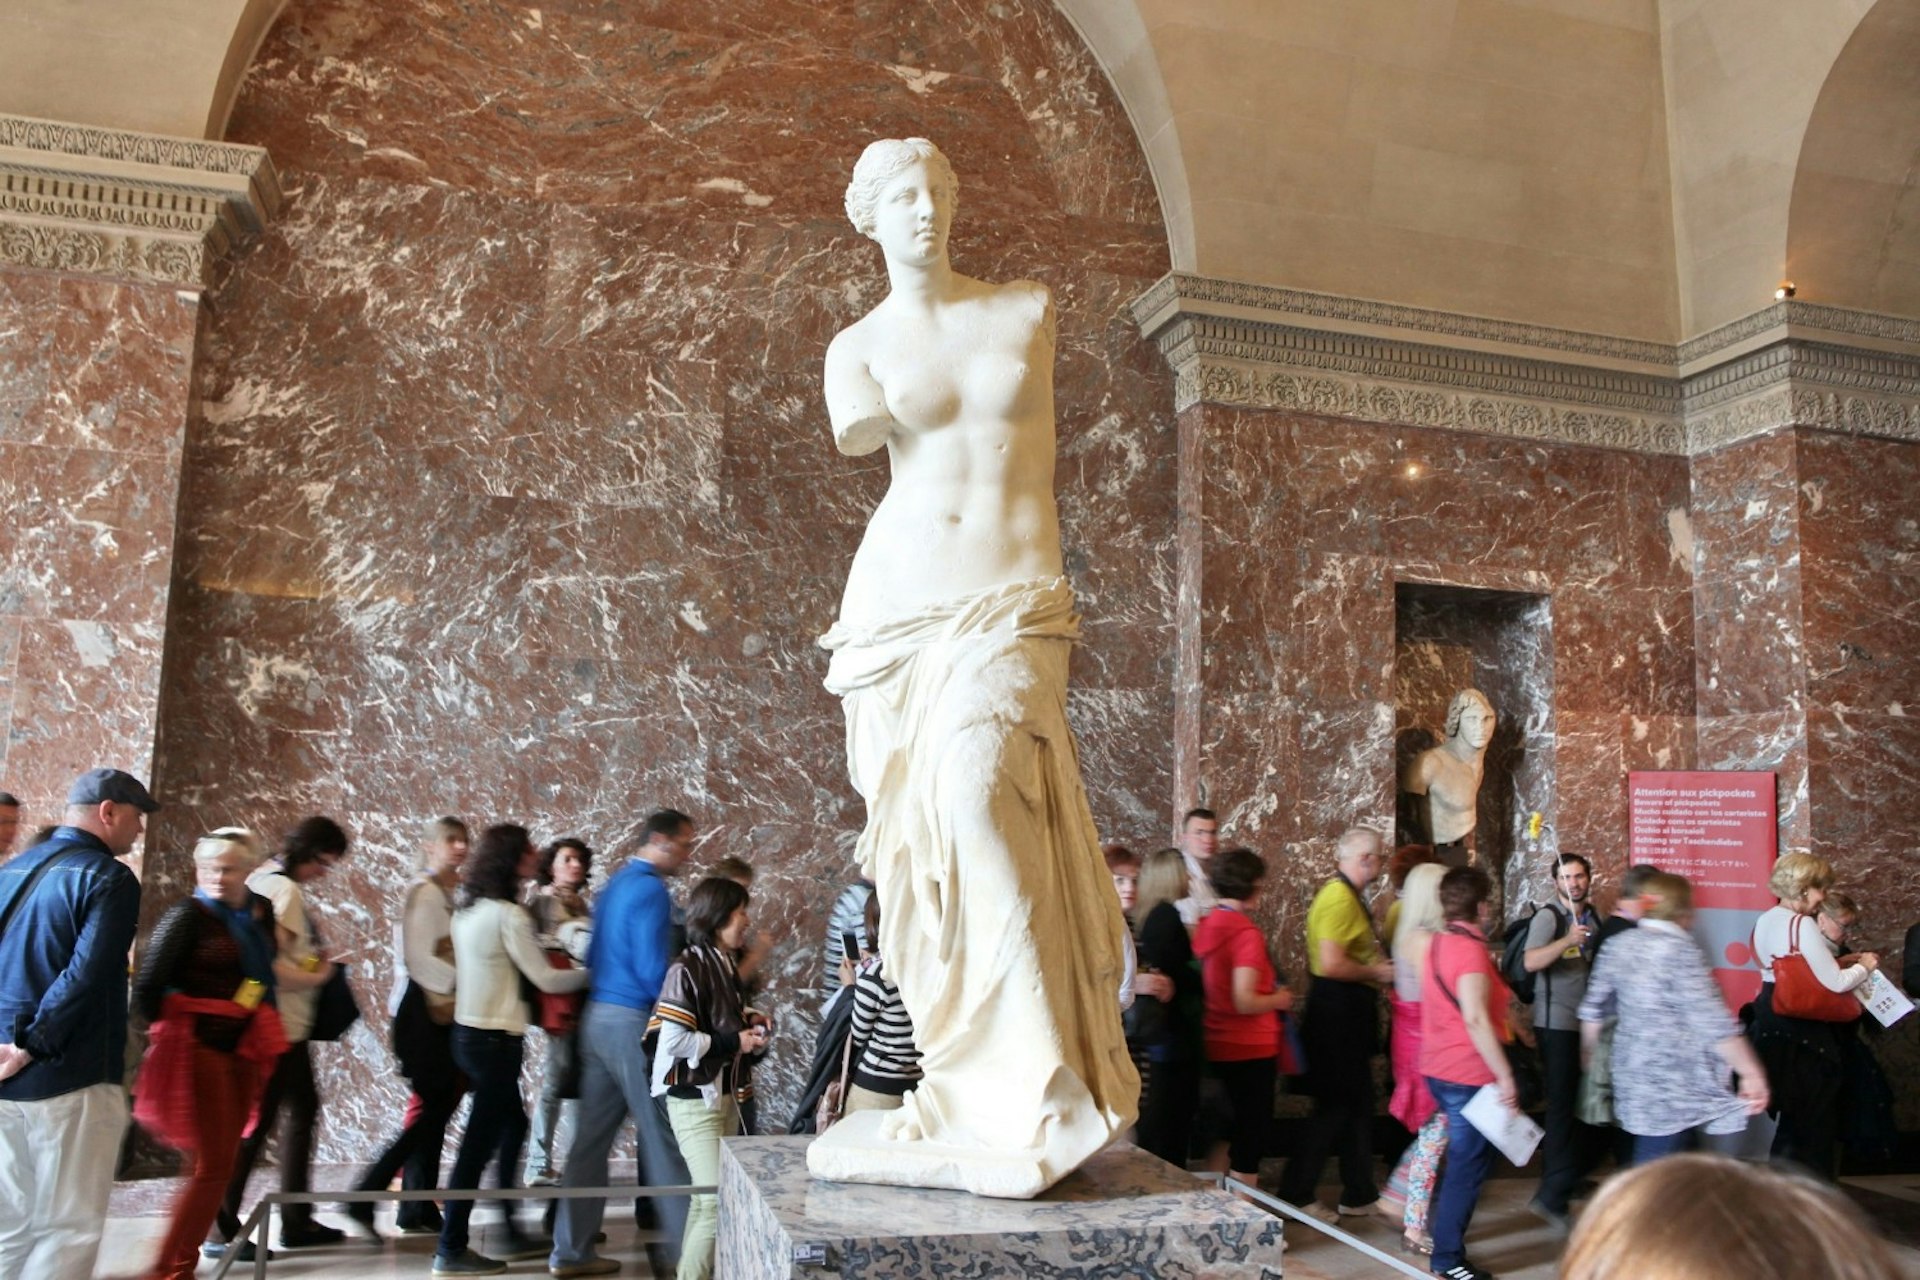 The statue of Venus de Milo at the Louvre Museum in Paris